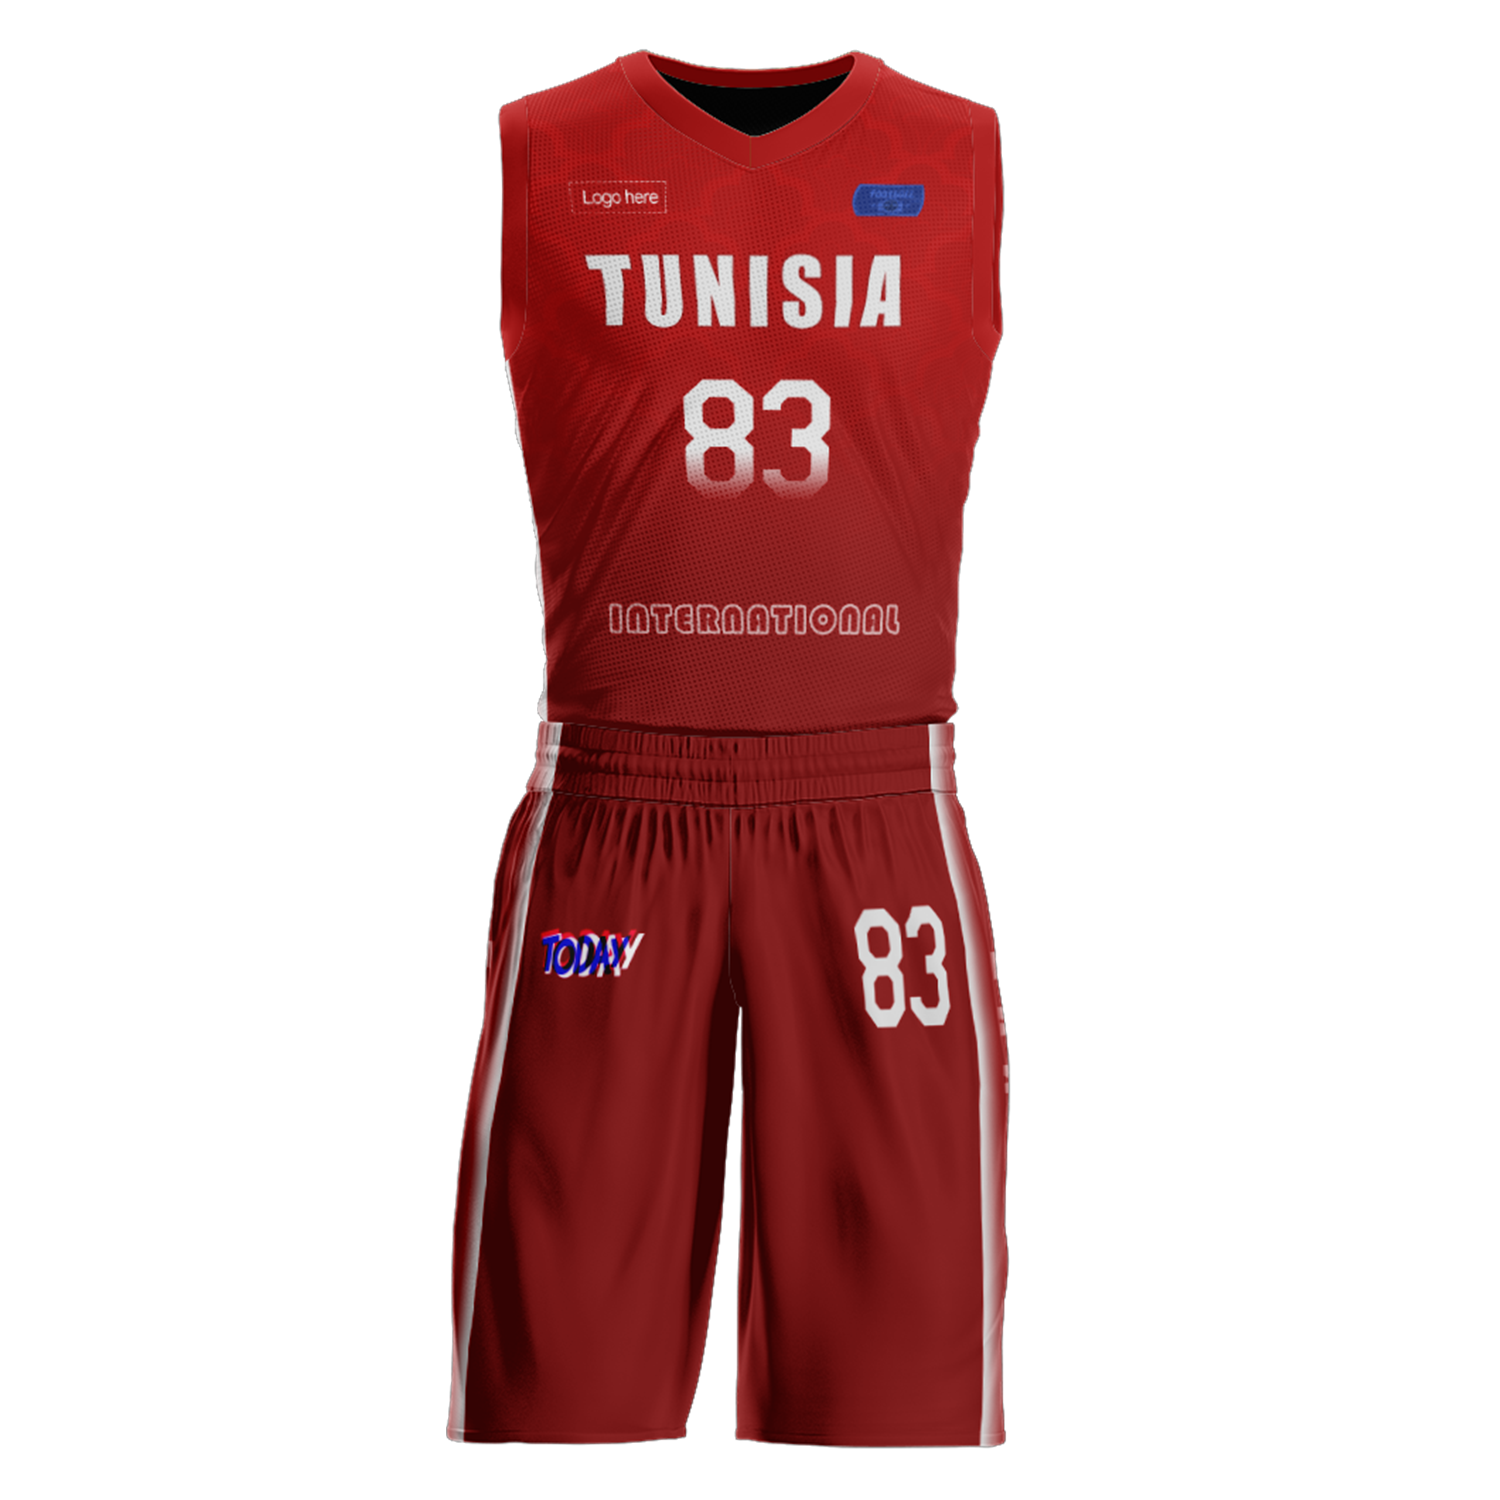 Benutzerdefinierte Tunesien-Team-Basketballanzüge